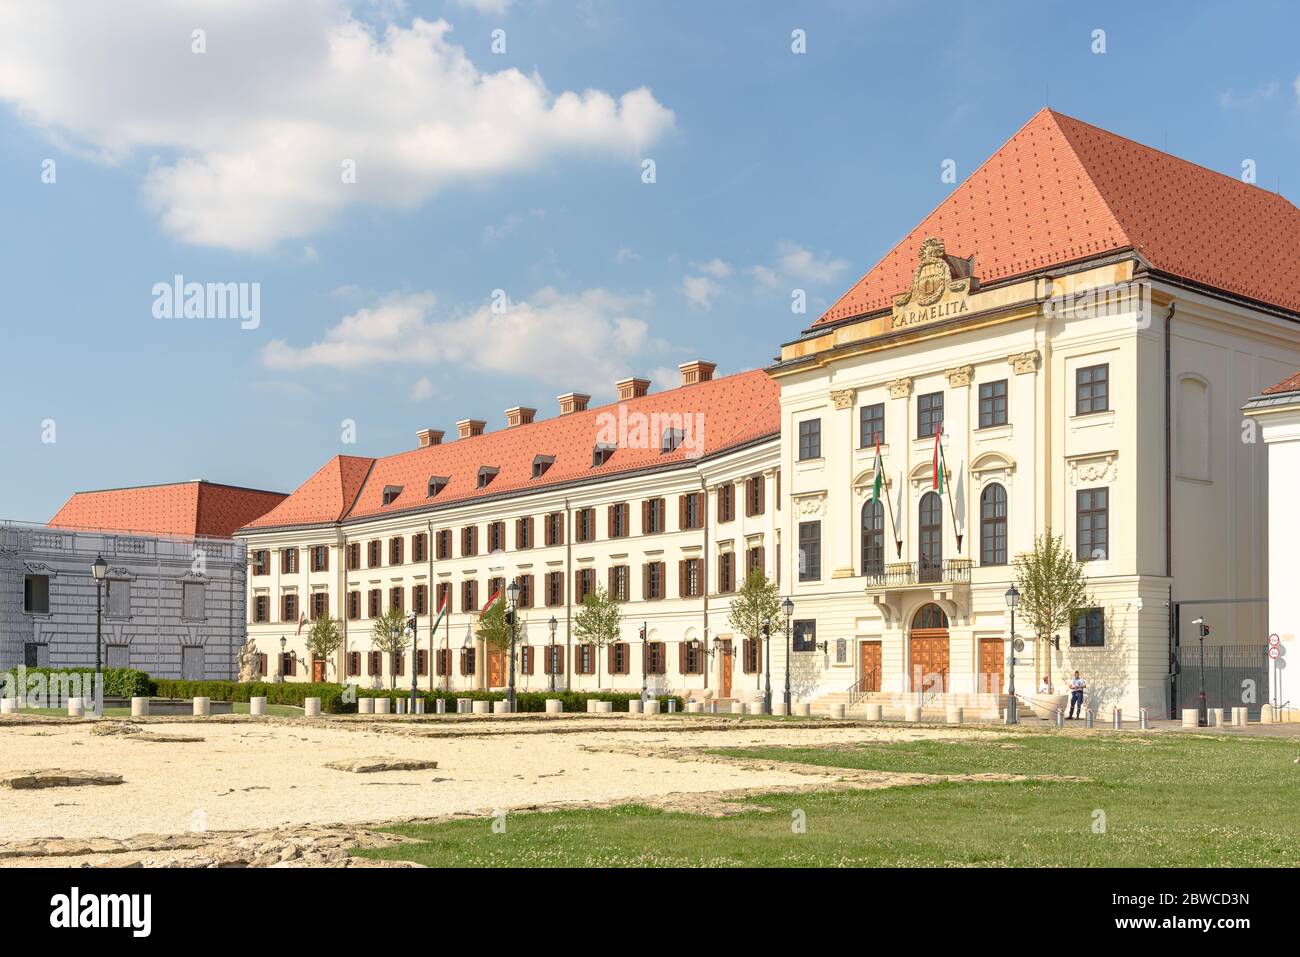 Das Karmelitenkloster im Burgviertel Buda, in dem heute das Büro des ungarischen Ministerpräsidenten untergebracht ist Stockfoto